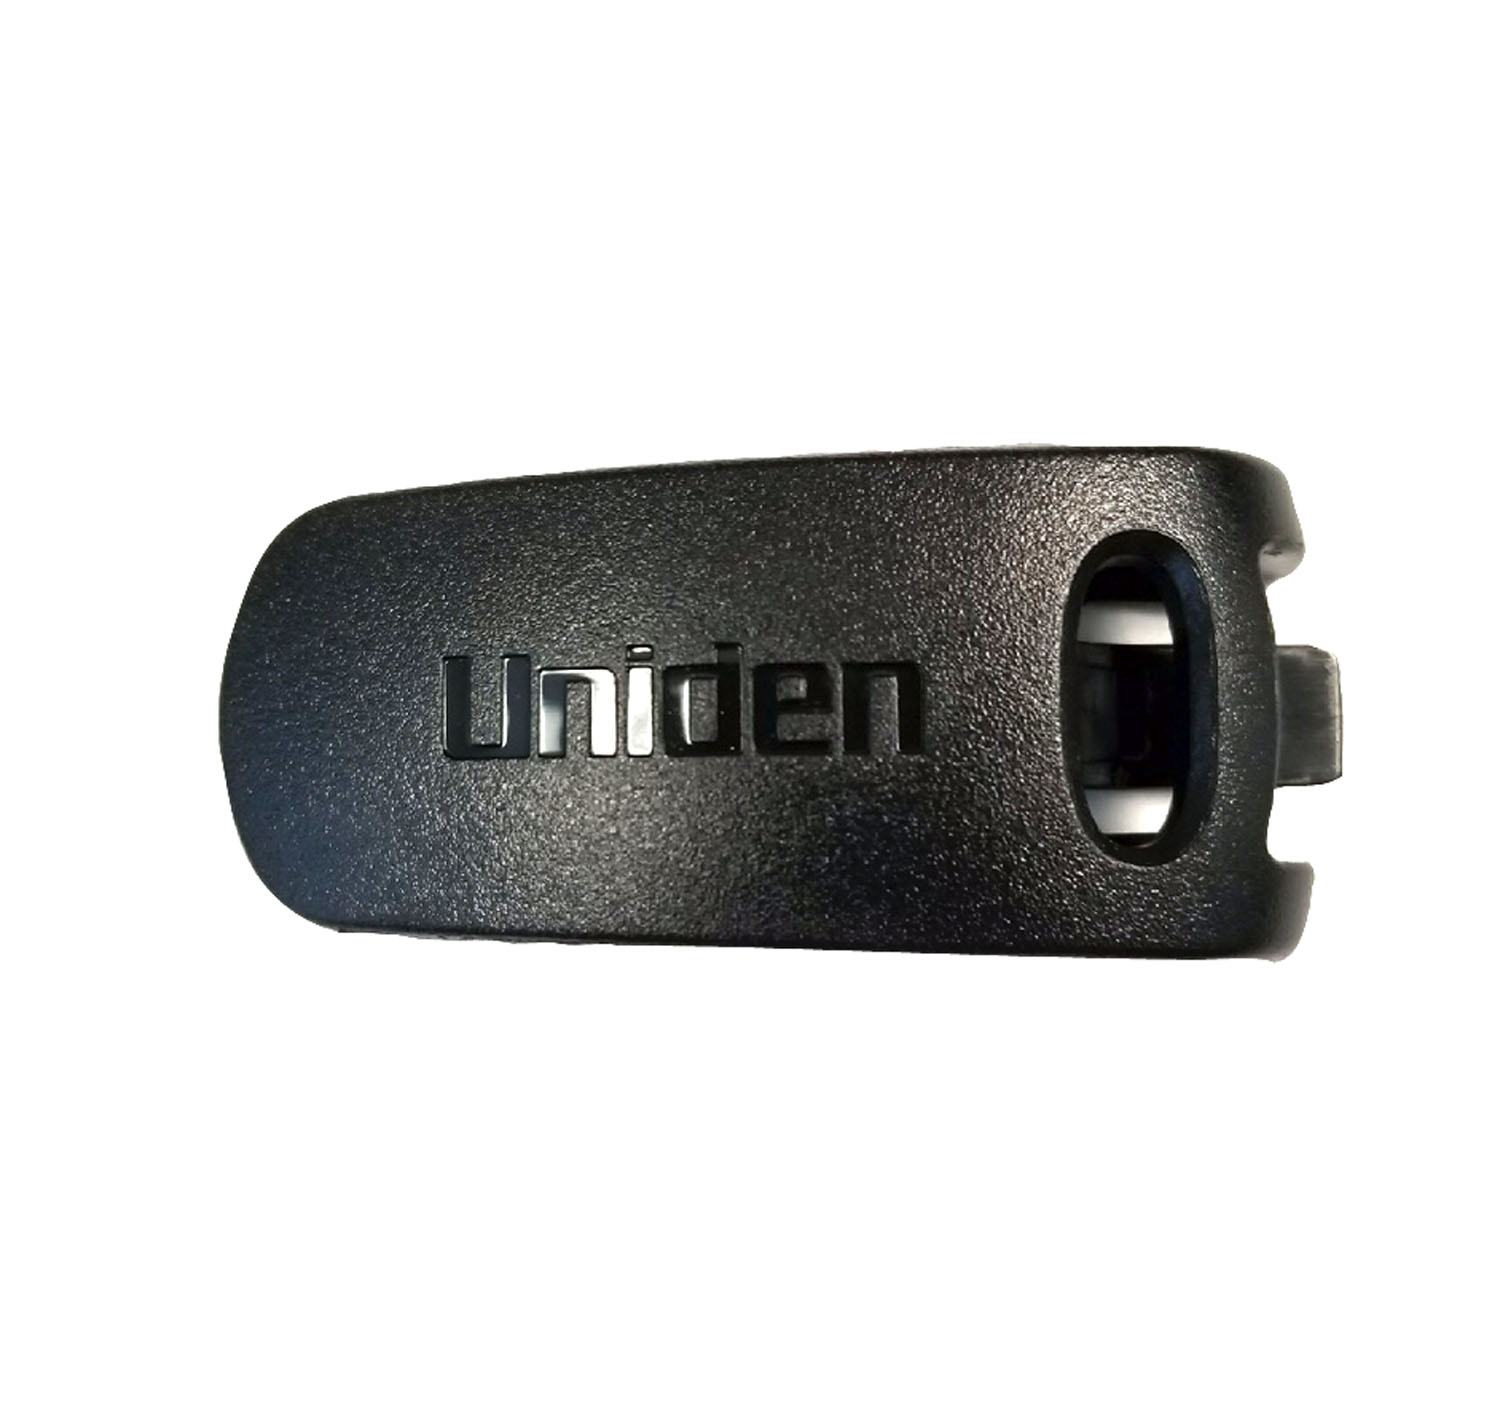 Uniden - Replacement Belt Clip For The Atlantis270